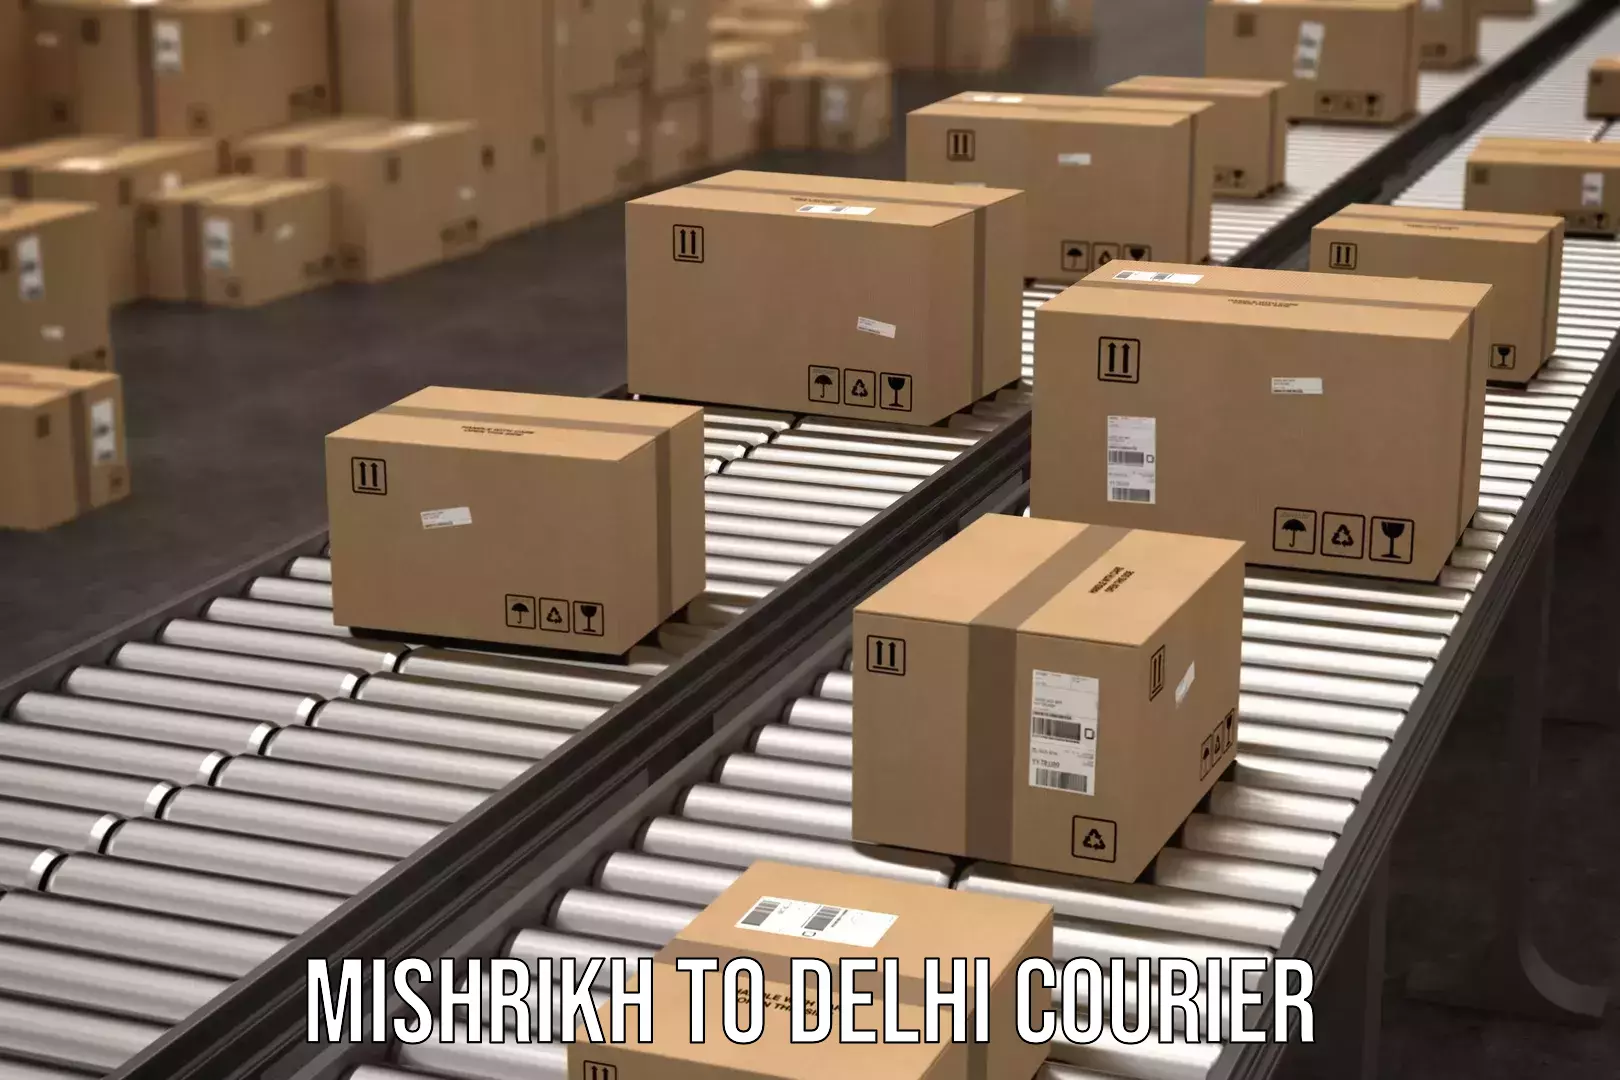 Custom courier packaging in Mishrikh to Delhi